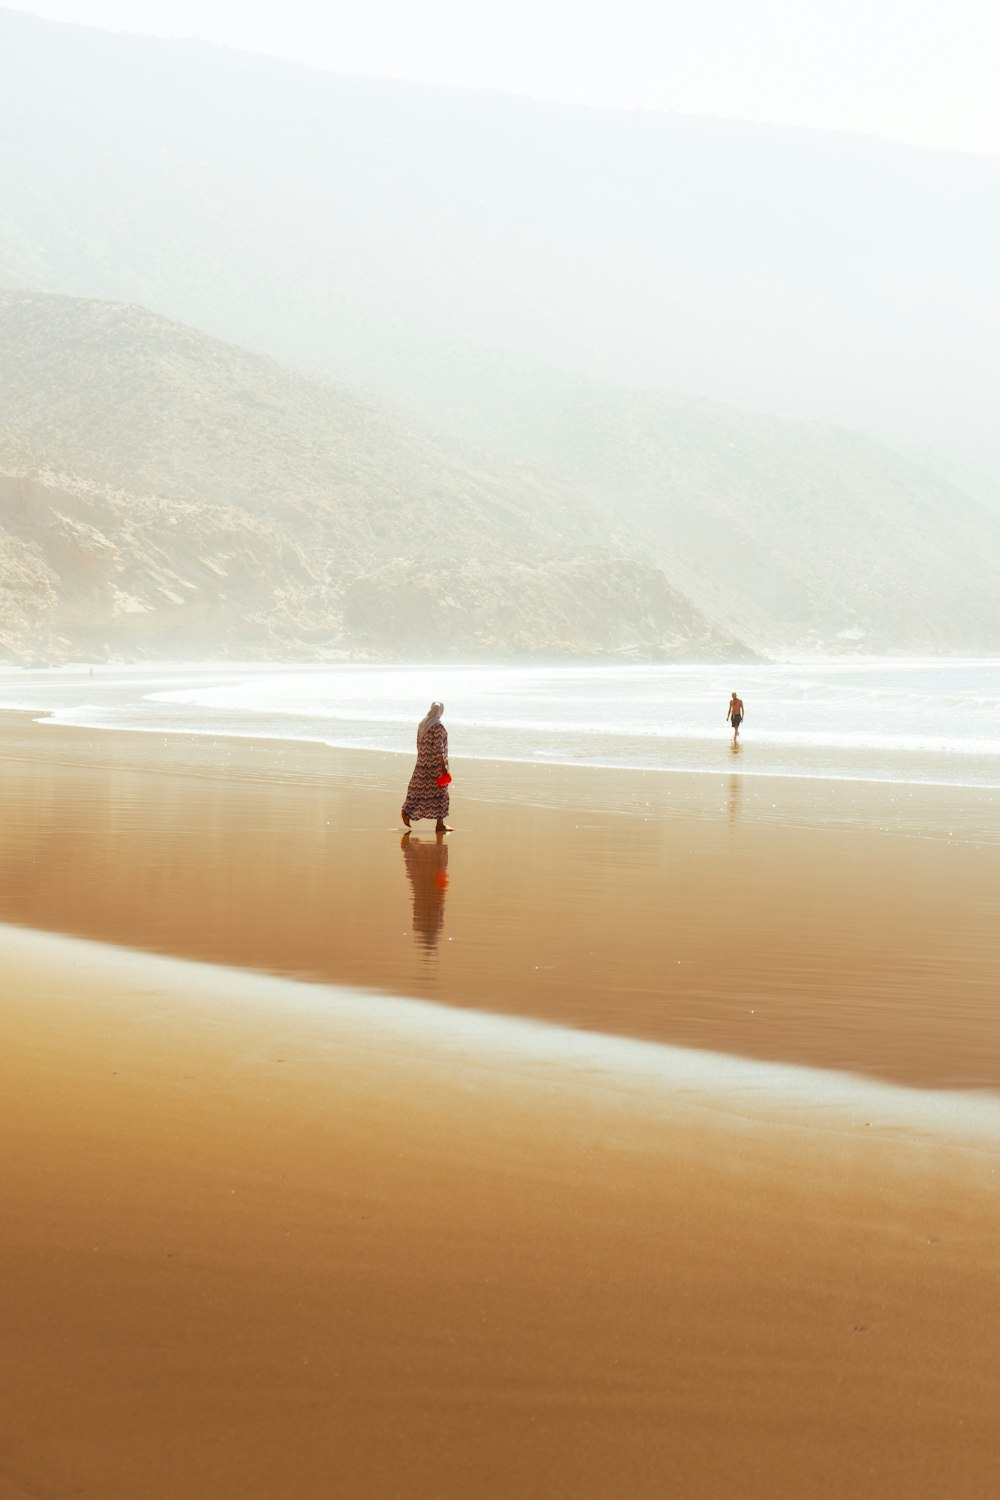 모래 해변을 가로 질러 걷는 두 사람